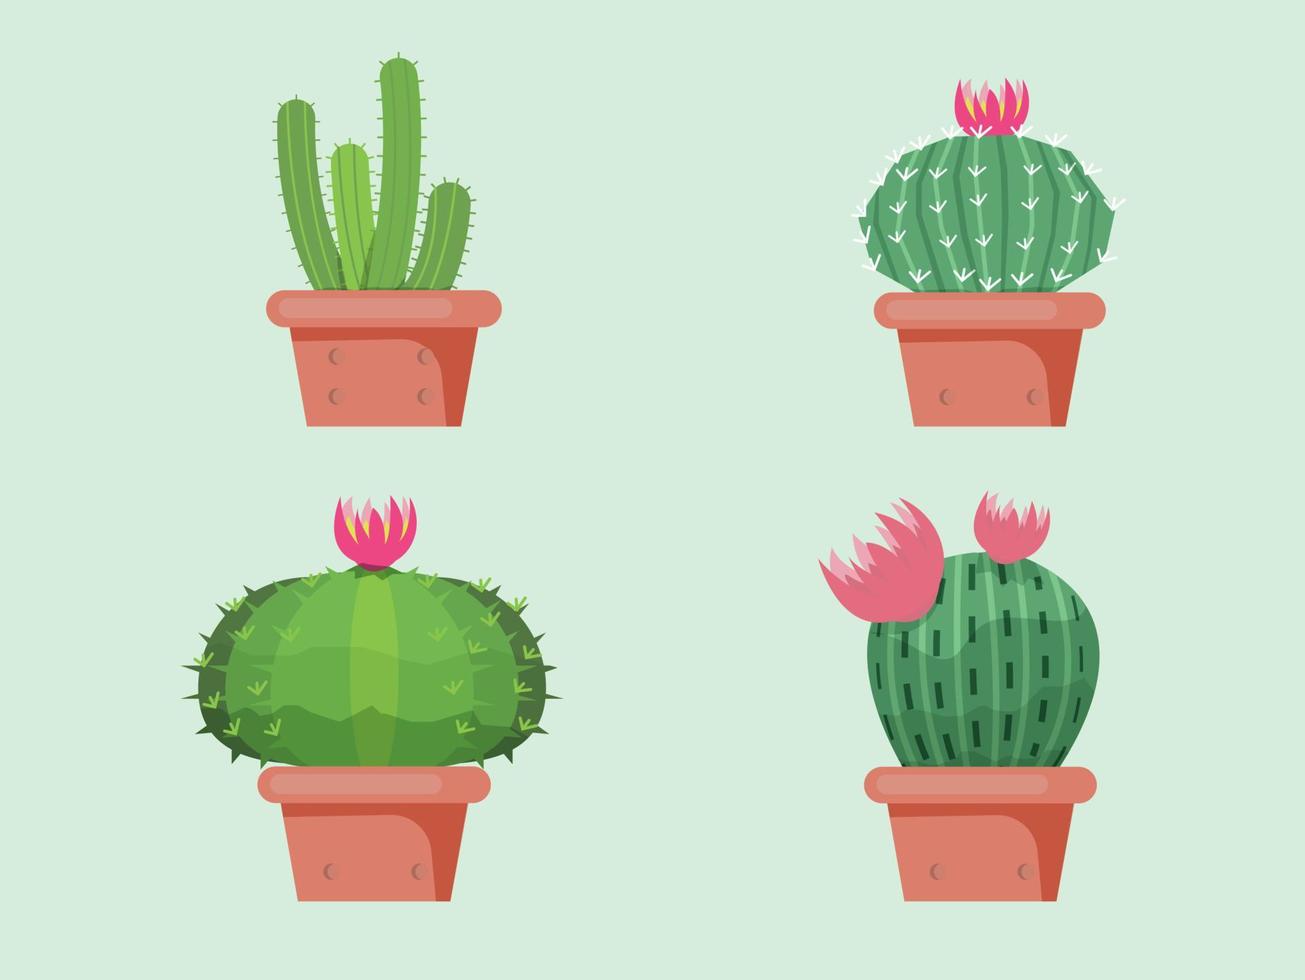 groene cactus, heldere cactussen bloemen geïsoleerd op wit background.design vector illustrator